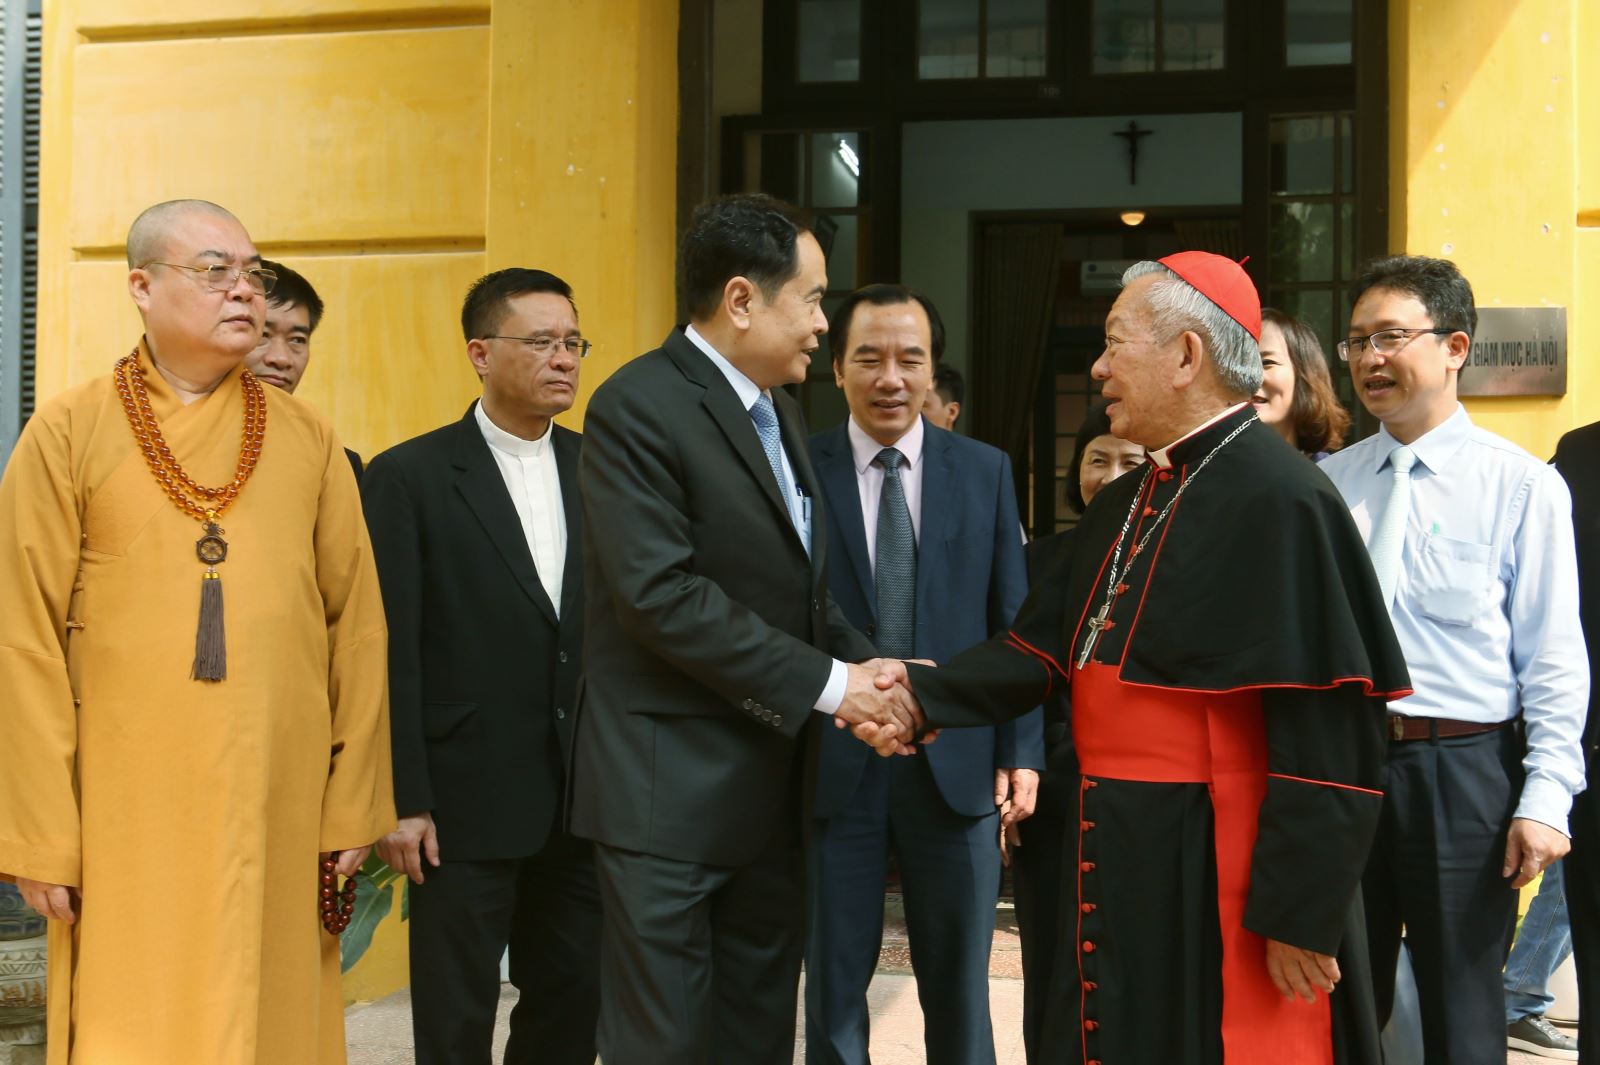 Chủ tịch Trần Thanh Mẫn thăm hỏi Hồng y, Tổng Giám mục Nguyễn Văn Nhơn nhân dịp Lễ phục sinh ngày 3/4/2018. Ảnh: Quang Vinh.